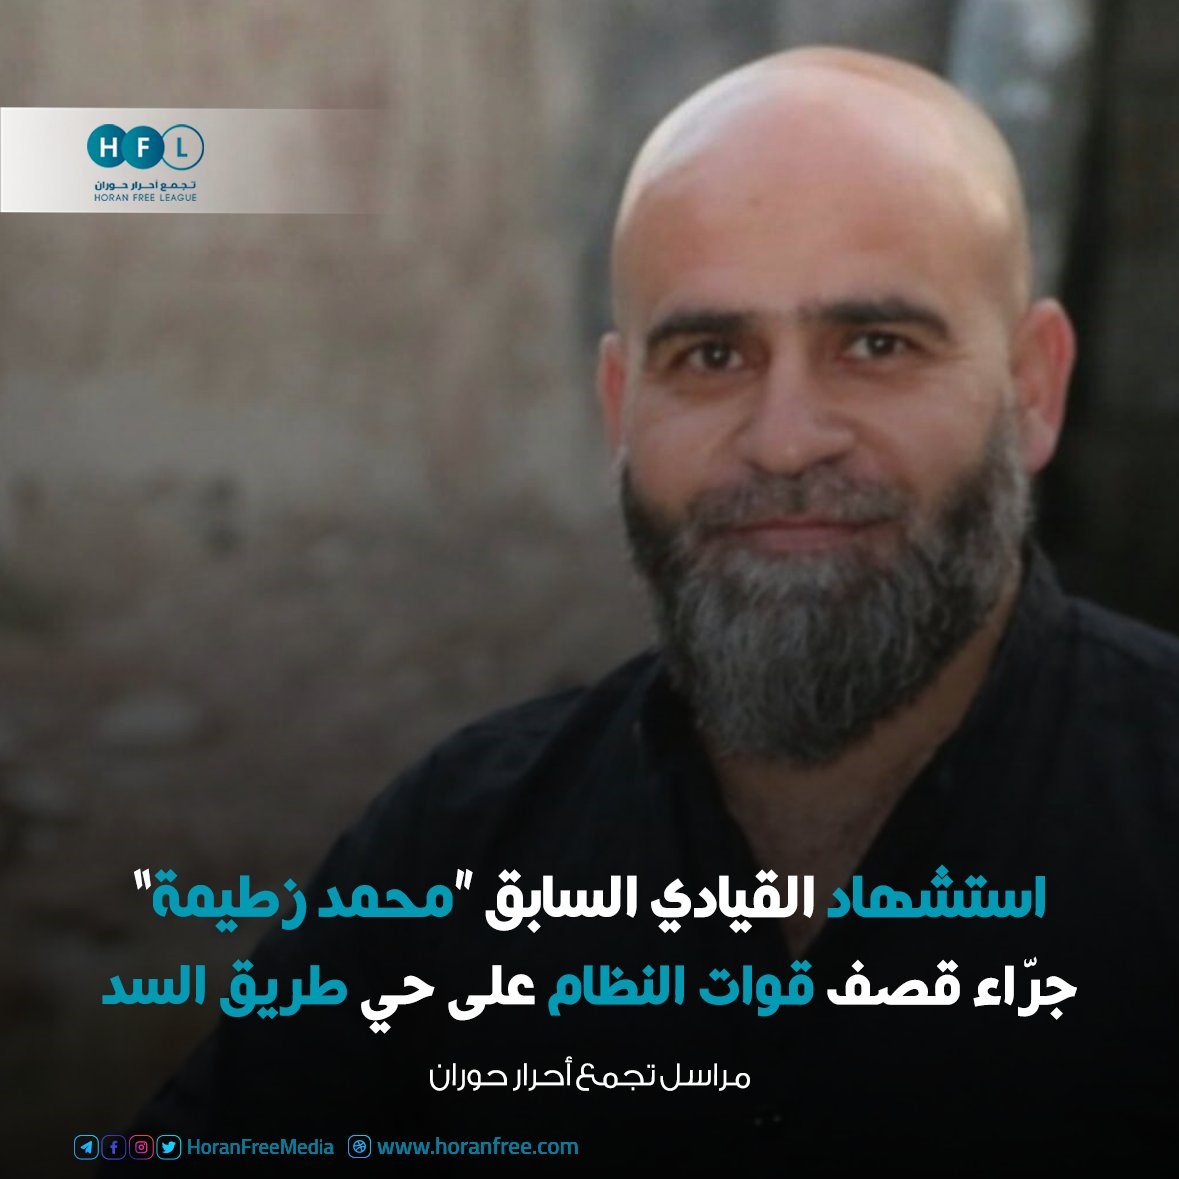 محمد هلال زطيمة" الملقب "أبو مهند" قيادي في لواء التوحيد